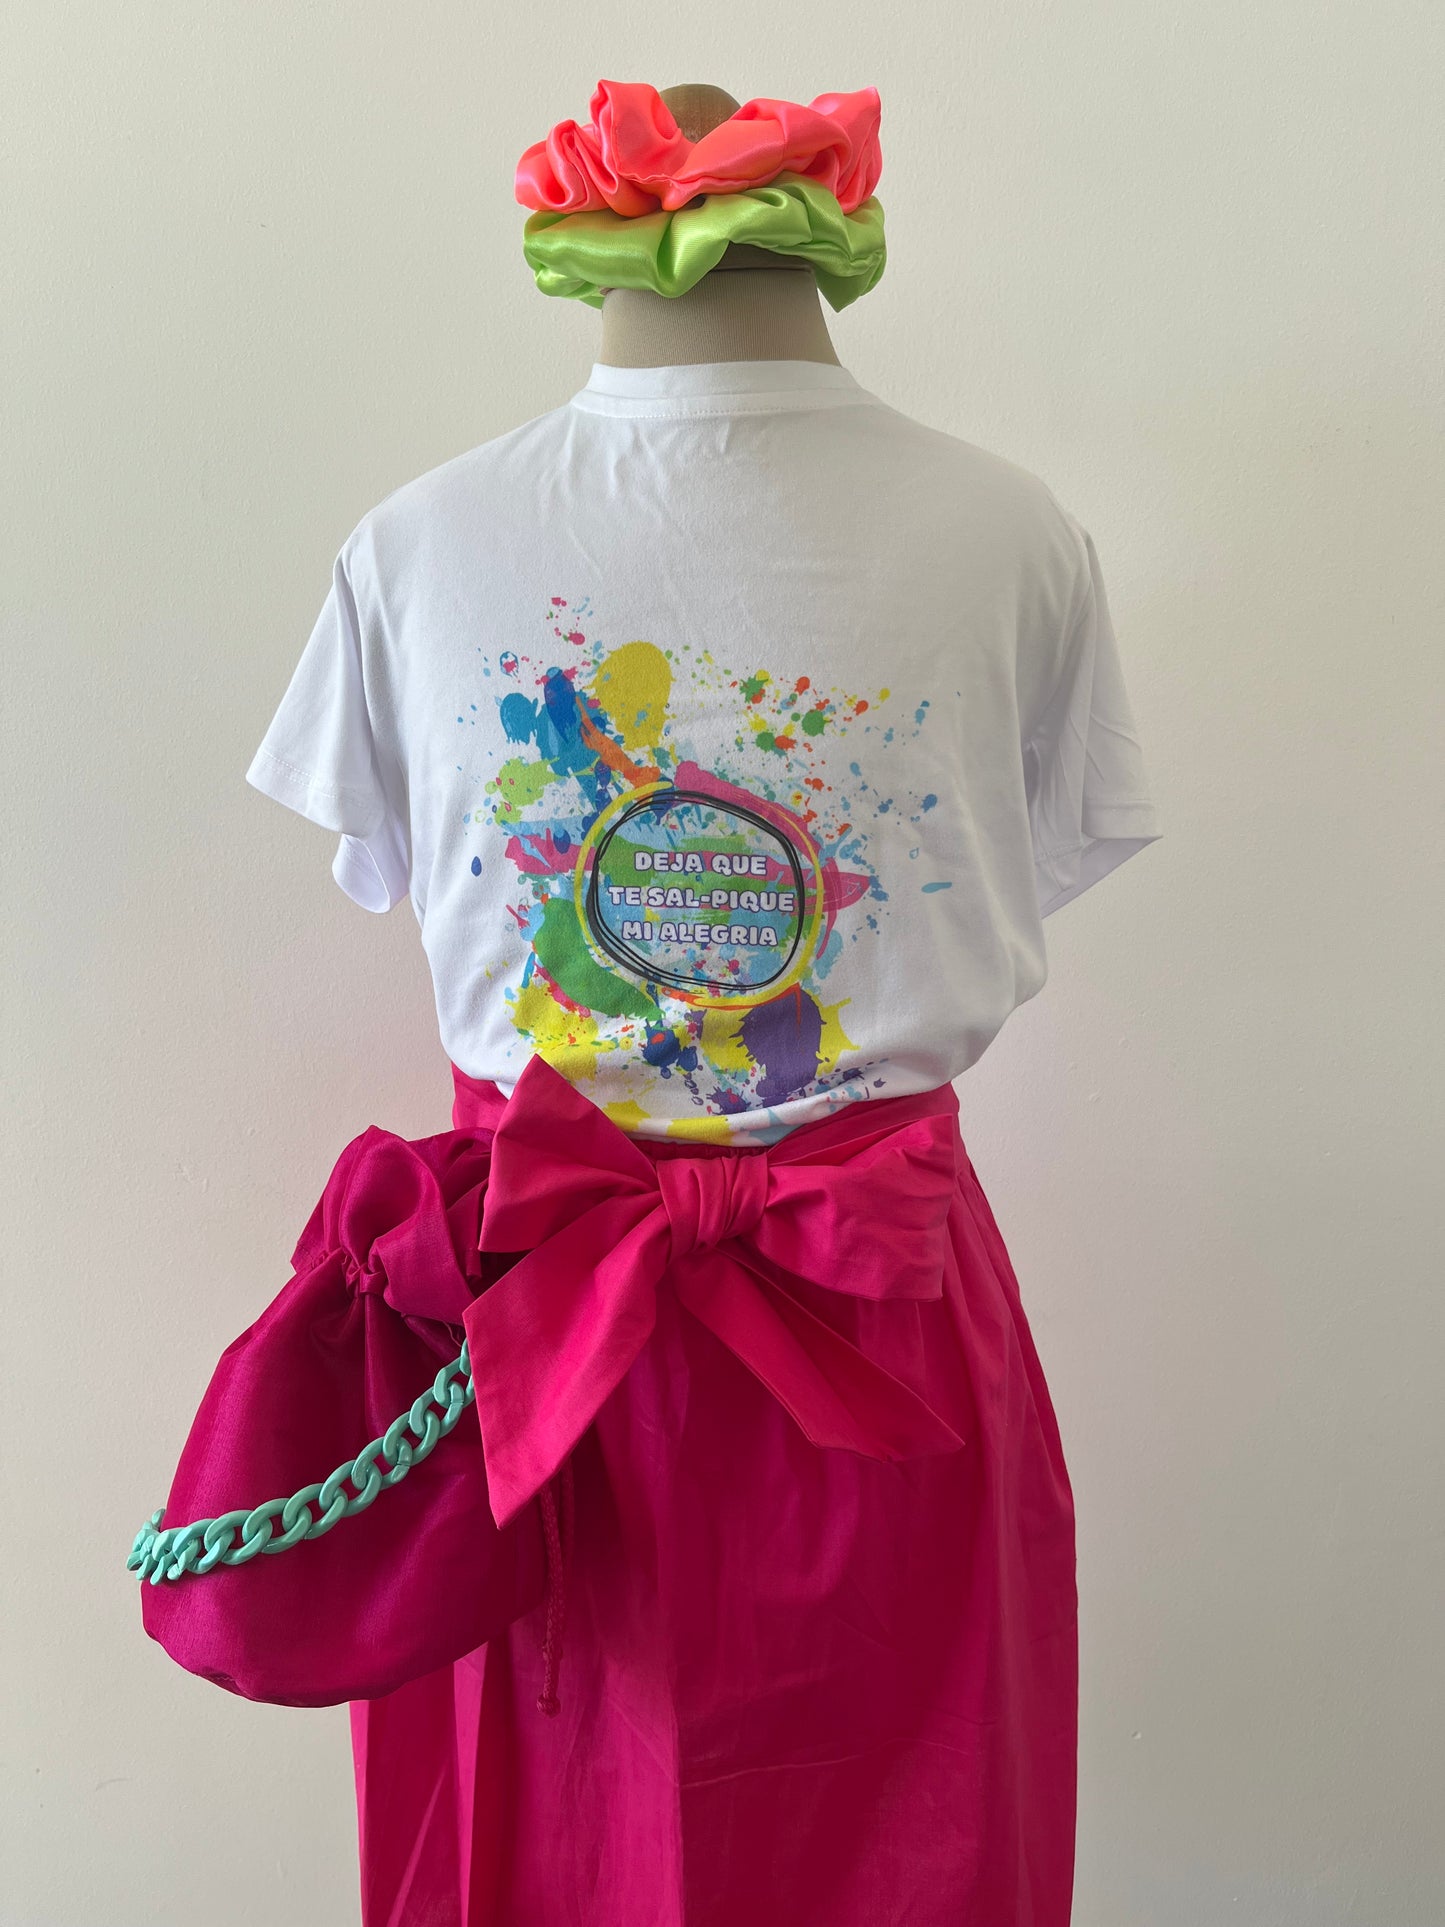 falda fucsia para niñas con camiseta alegre con la frase "deja que te salpique mi alegría" y mochila fucsica